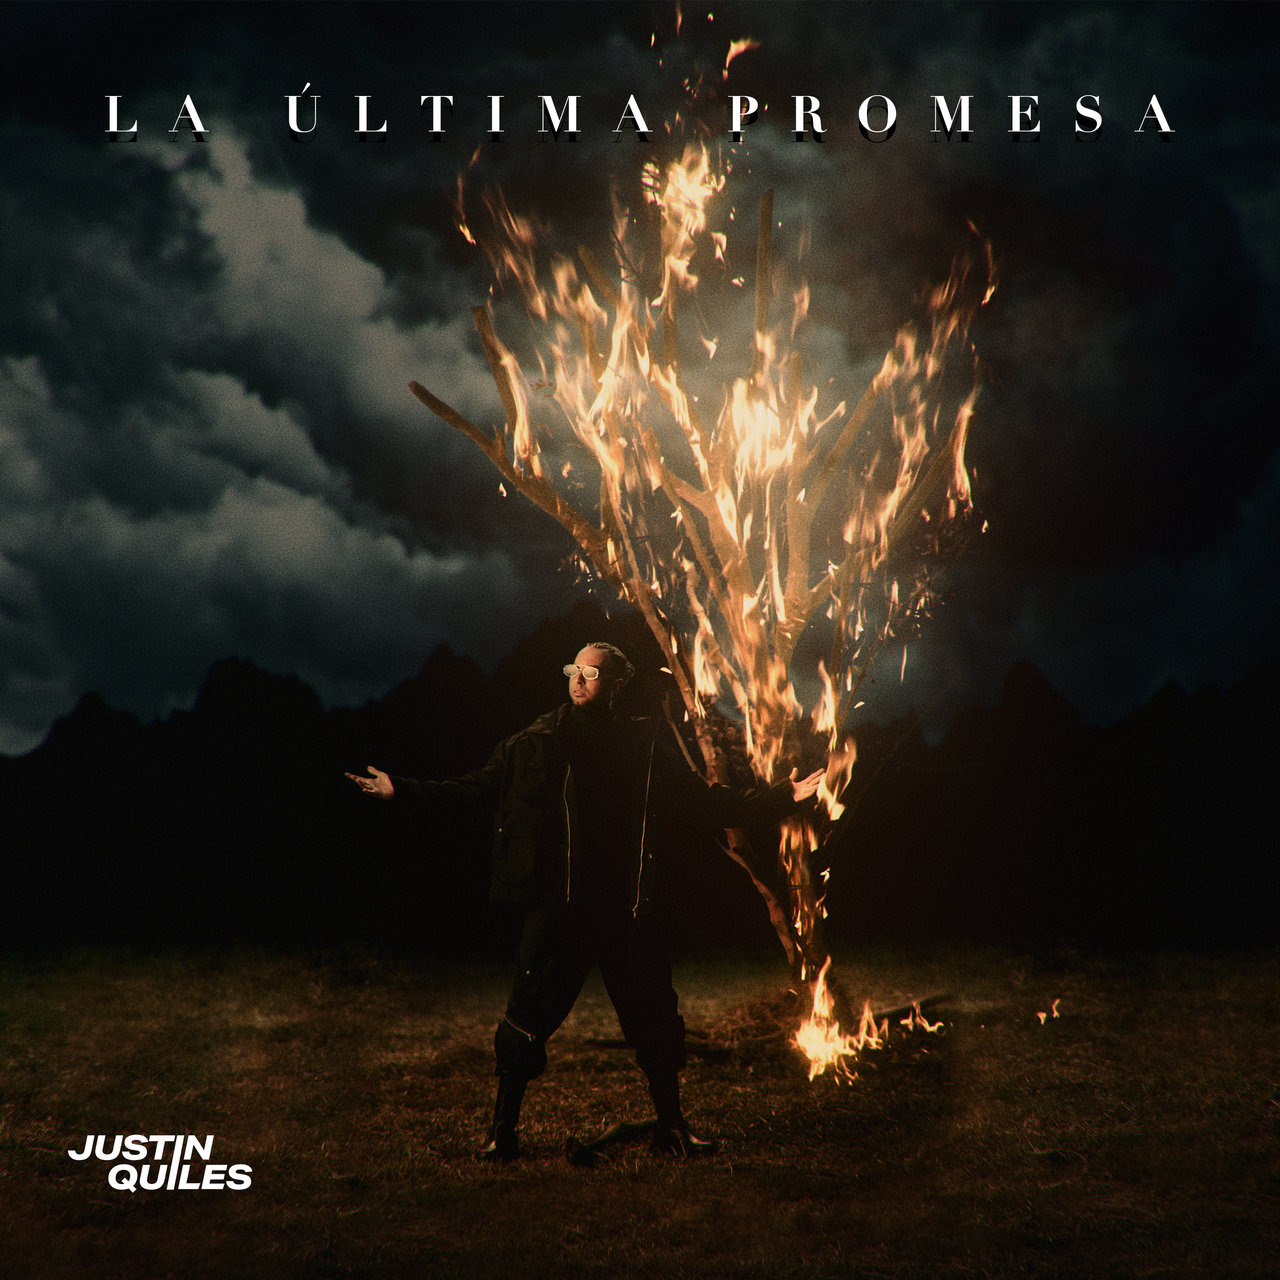 Justin Quiles featuring Maluma — La Botella cover artwork